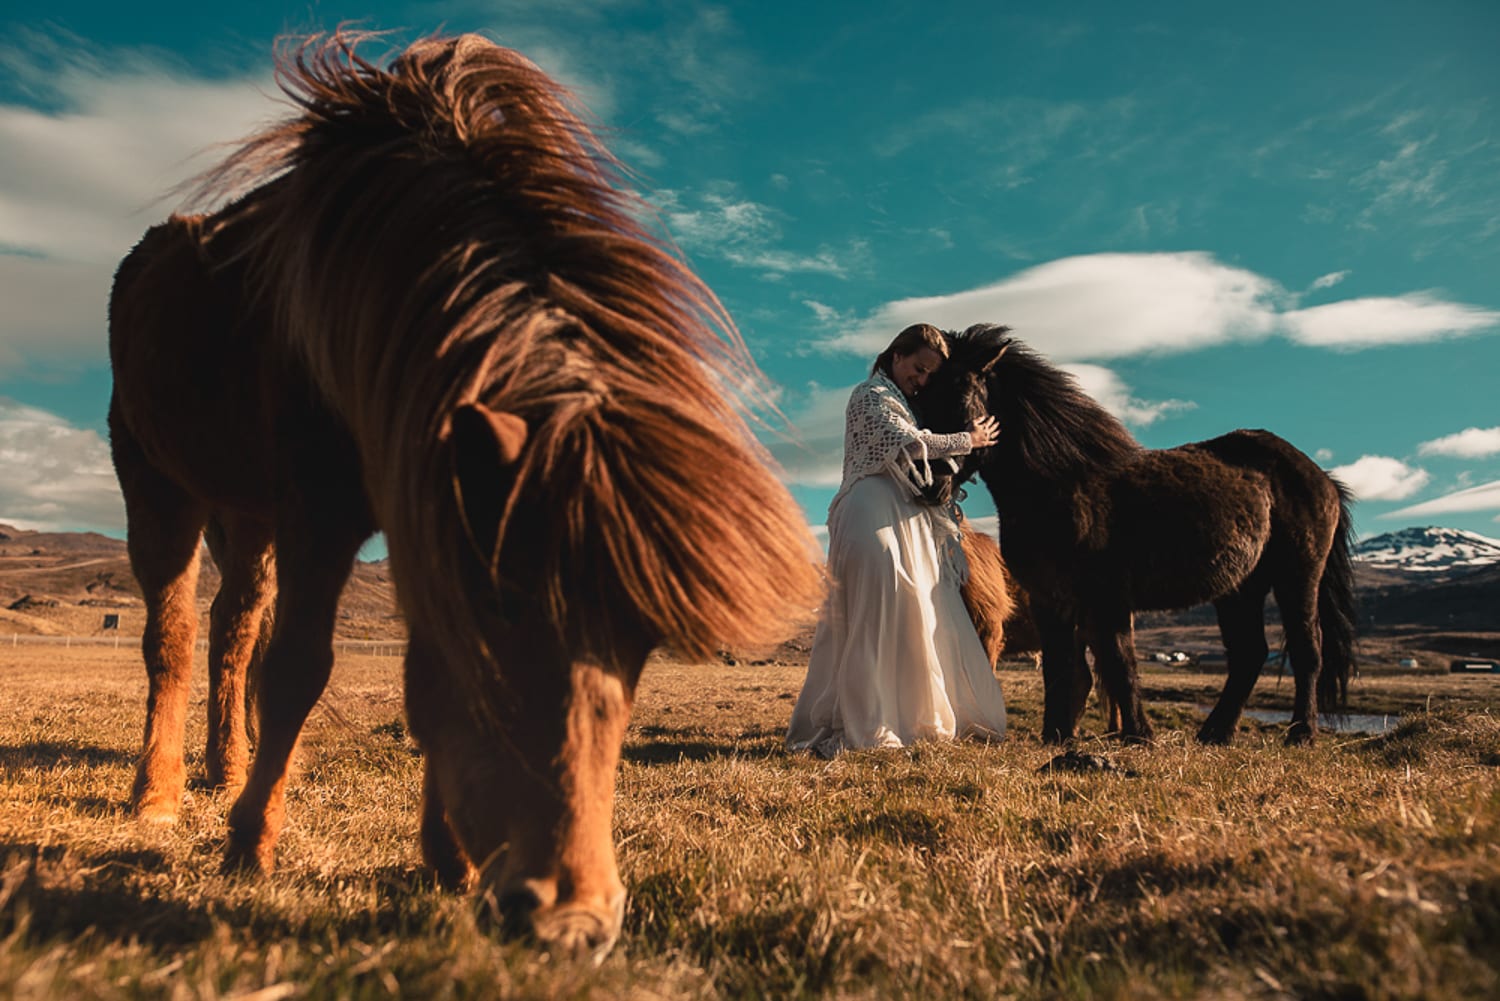 Destination wedding – Iceland adventures